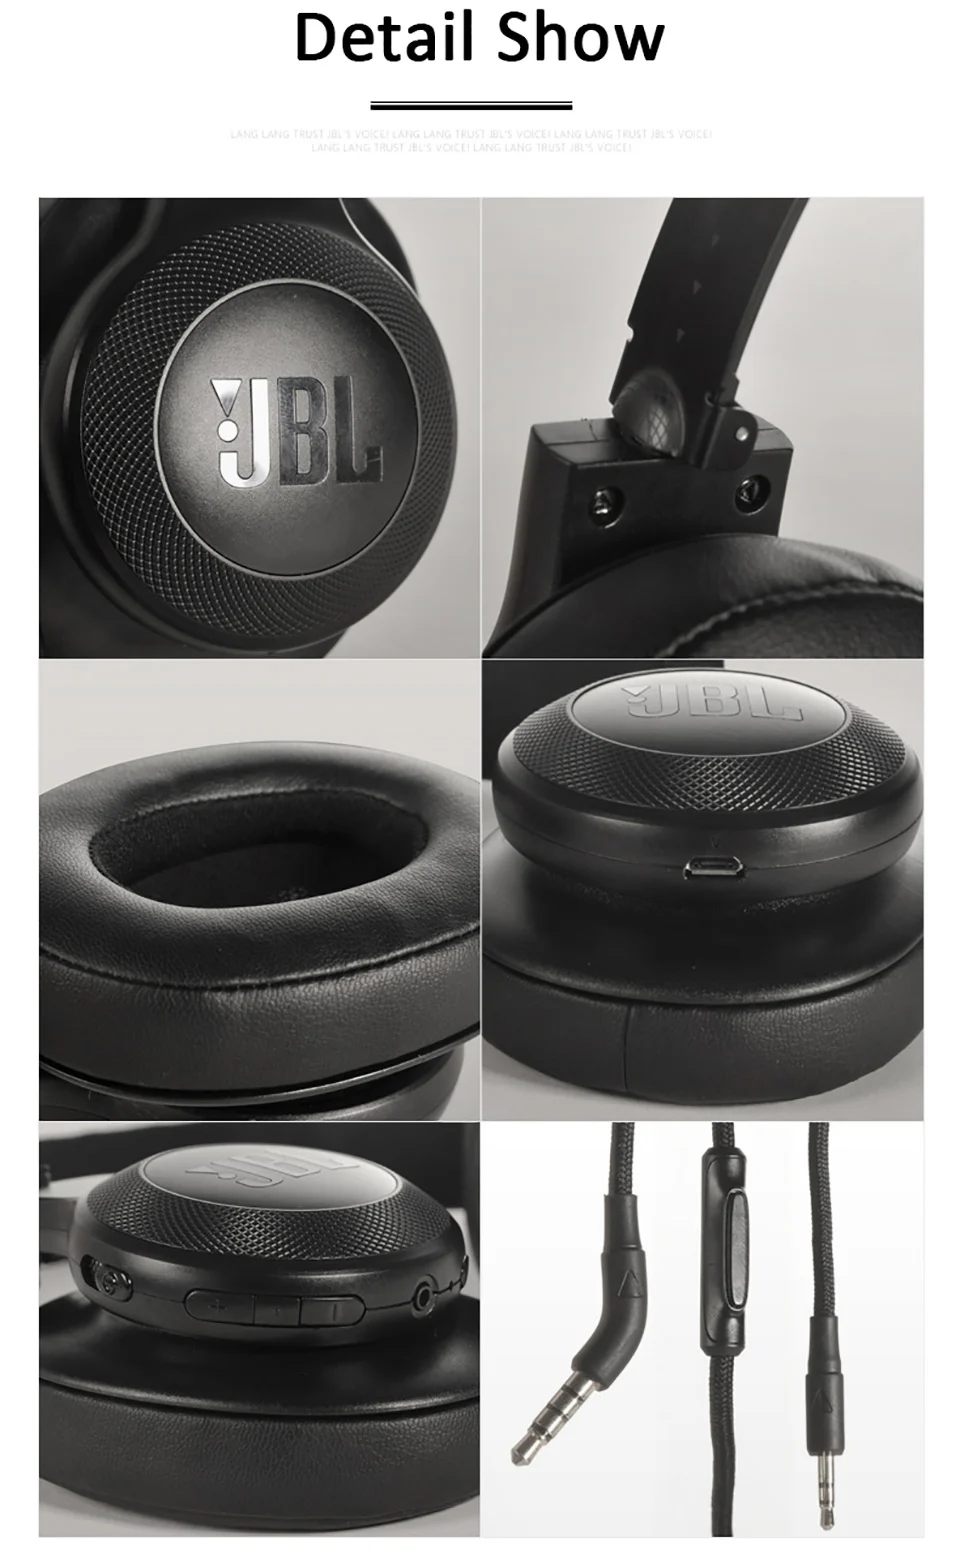 Оригинальные JBL E55BT беспроводные Bluetooth наушники портативные складные наушники супер бас наушники AUX в HiFi Спортивная гарнитура с микрофоном